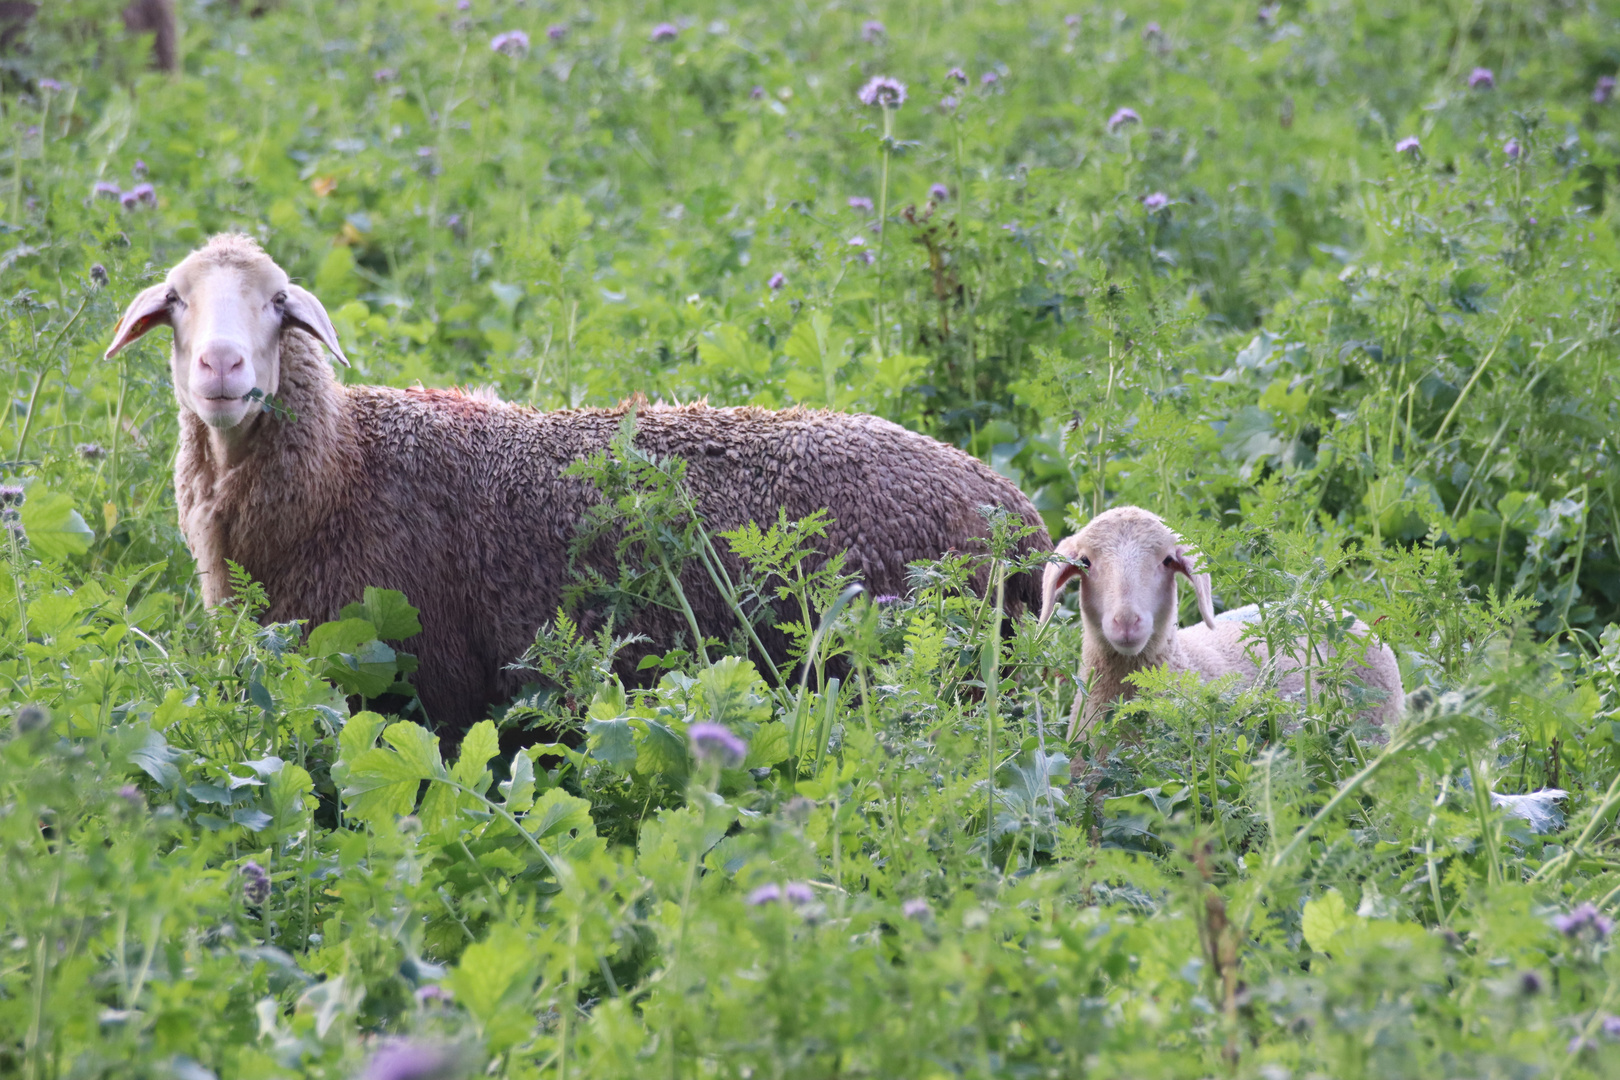 Schafe auf Blühwiese